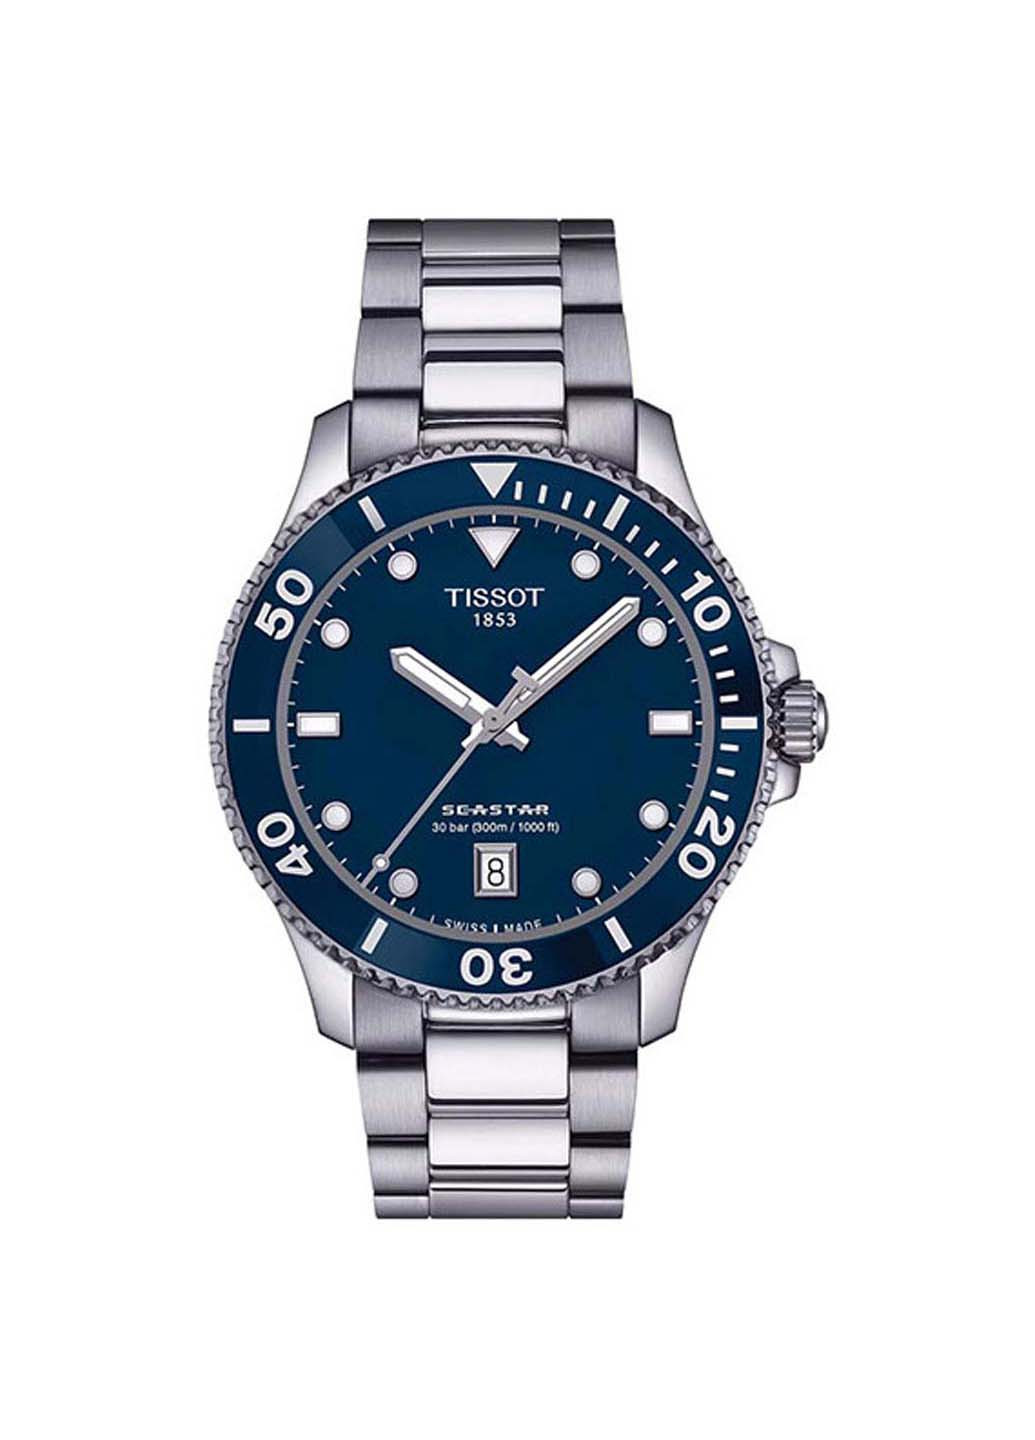 Часы Seastar 1000 40mm T120.410.11.041.00 Tissot (270932452)